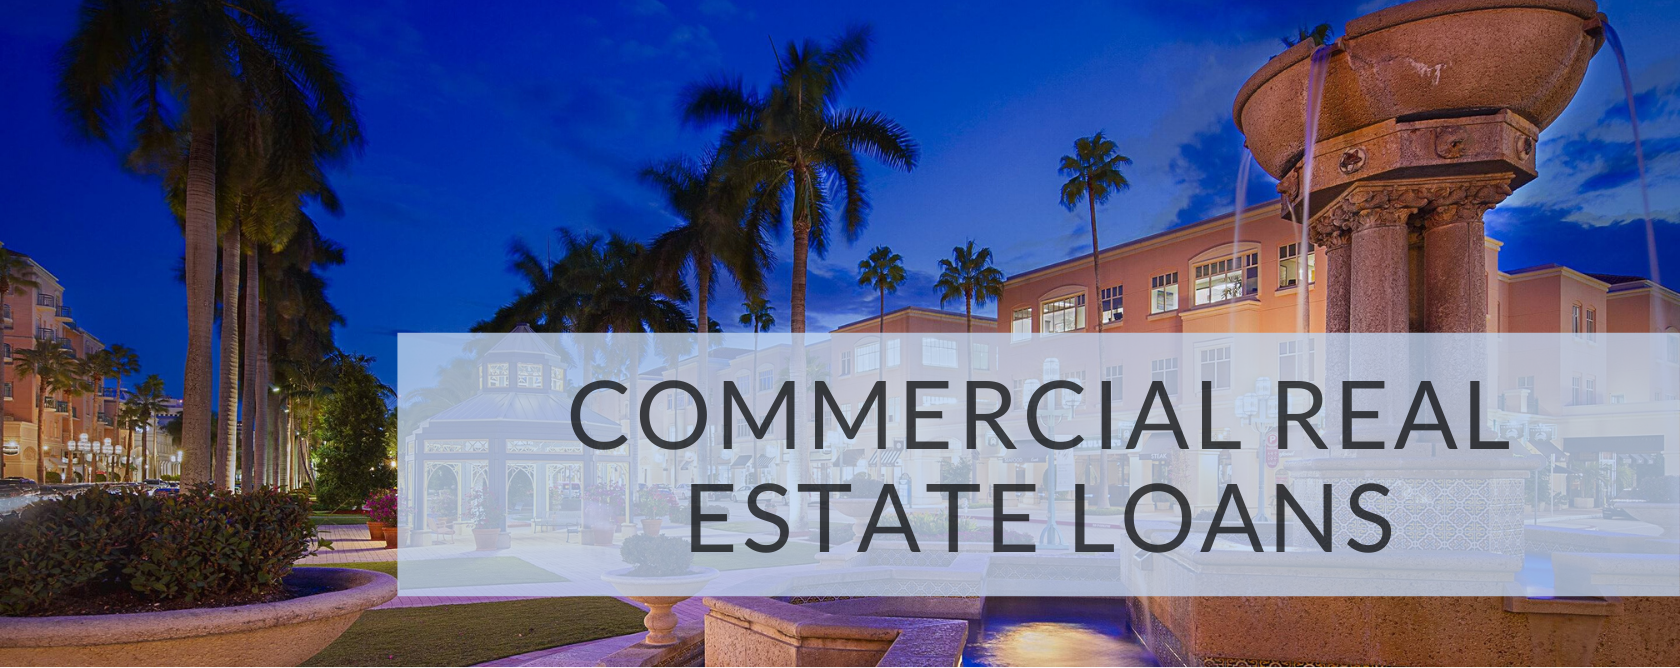 Commercial Real Estate Loans FL